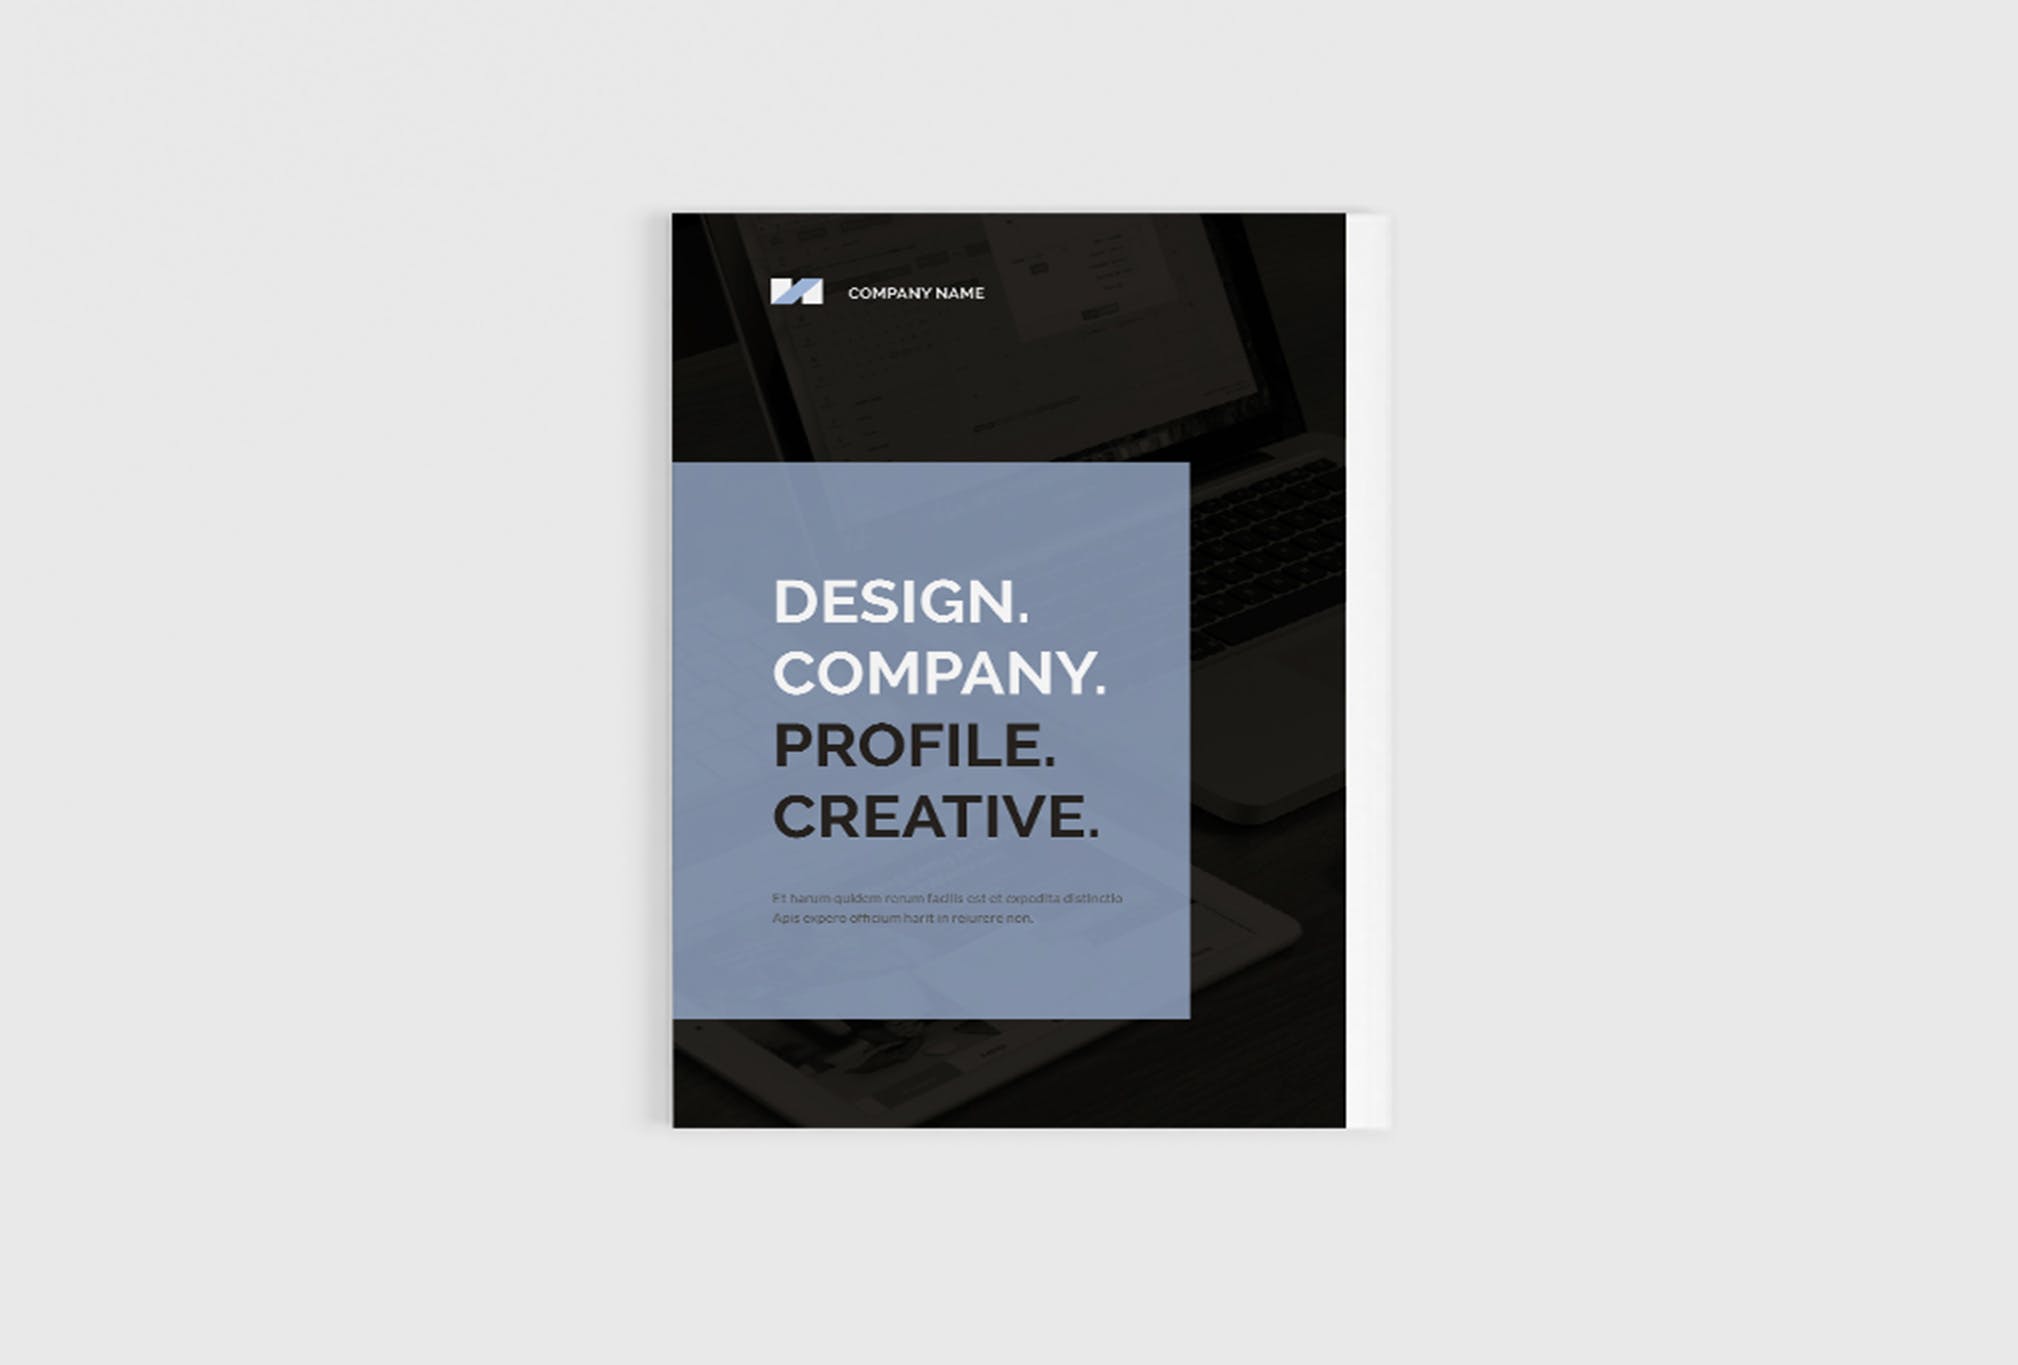 创意设计公司画册设计模板 Design Company Profile插图(1)